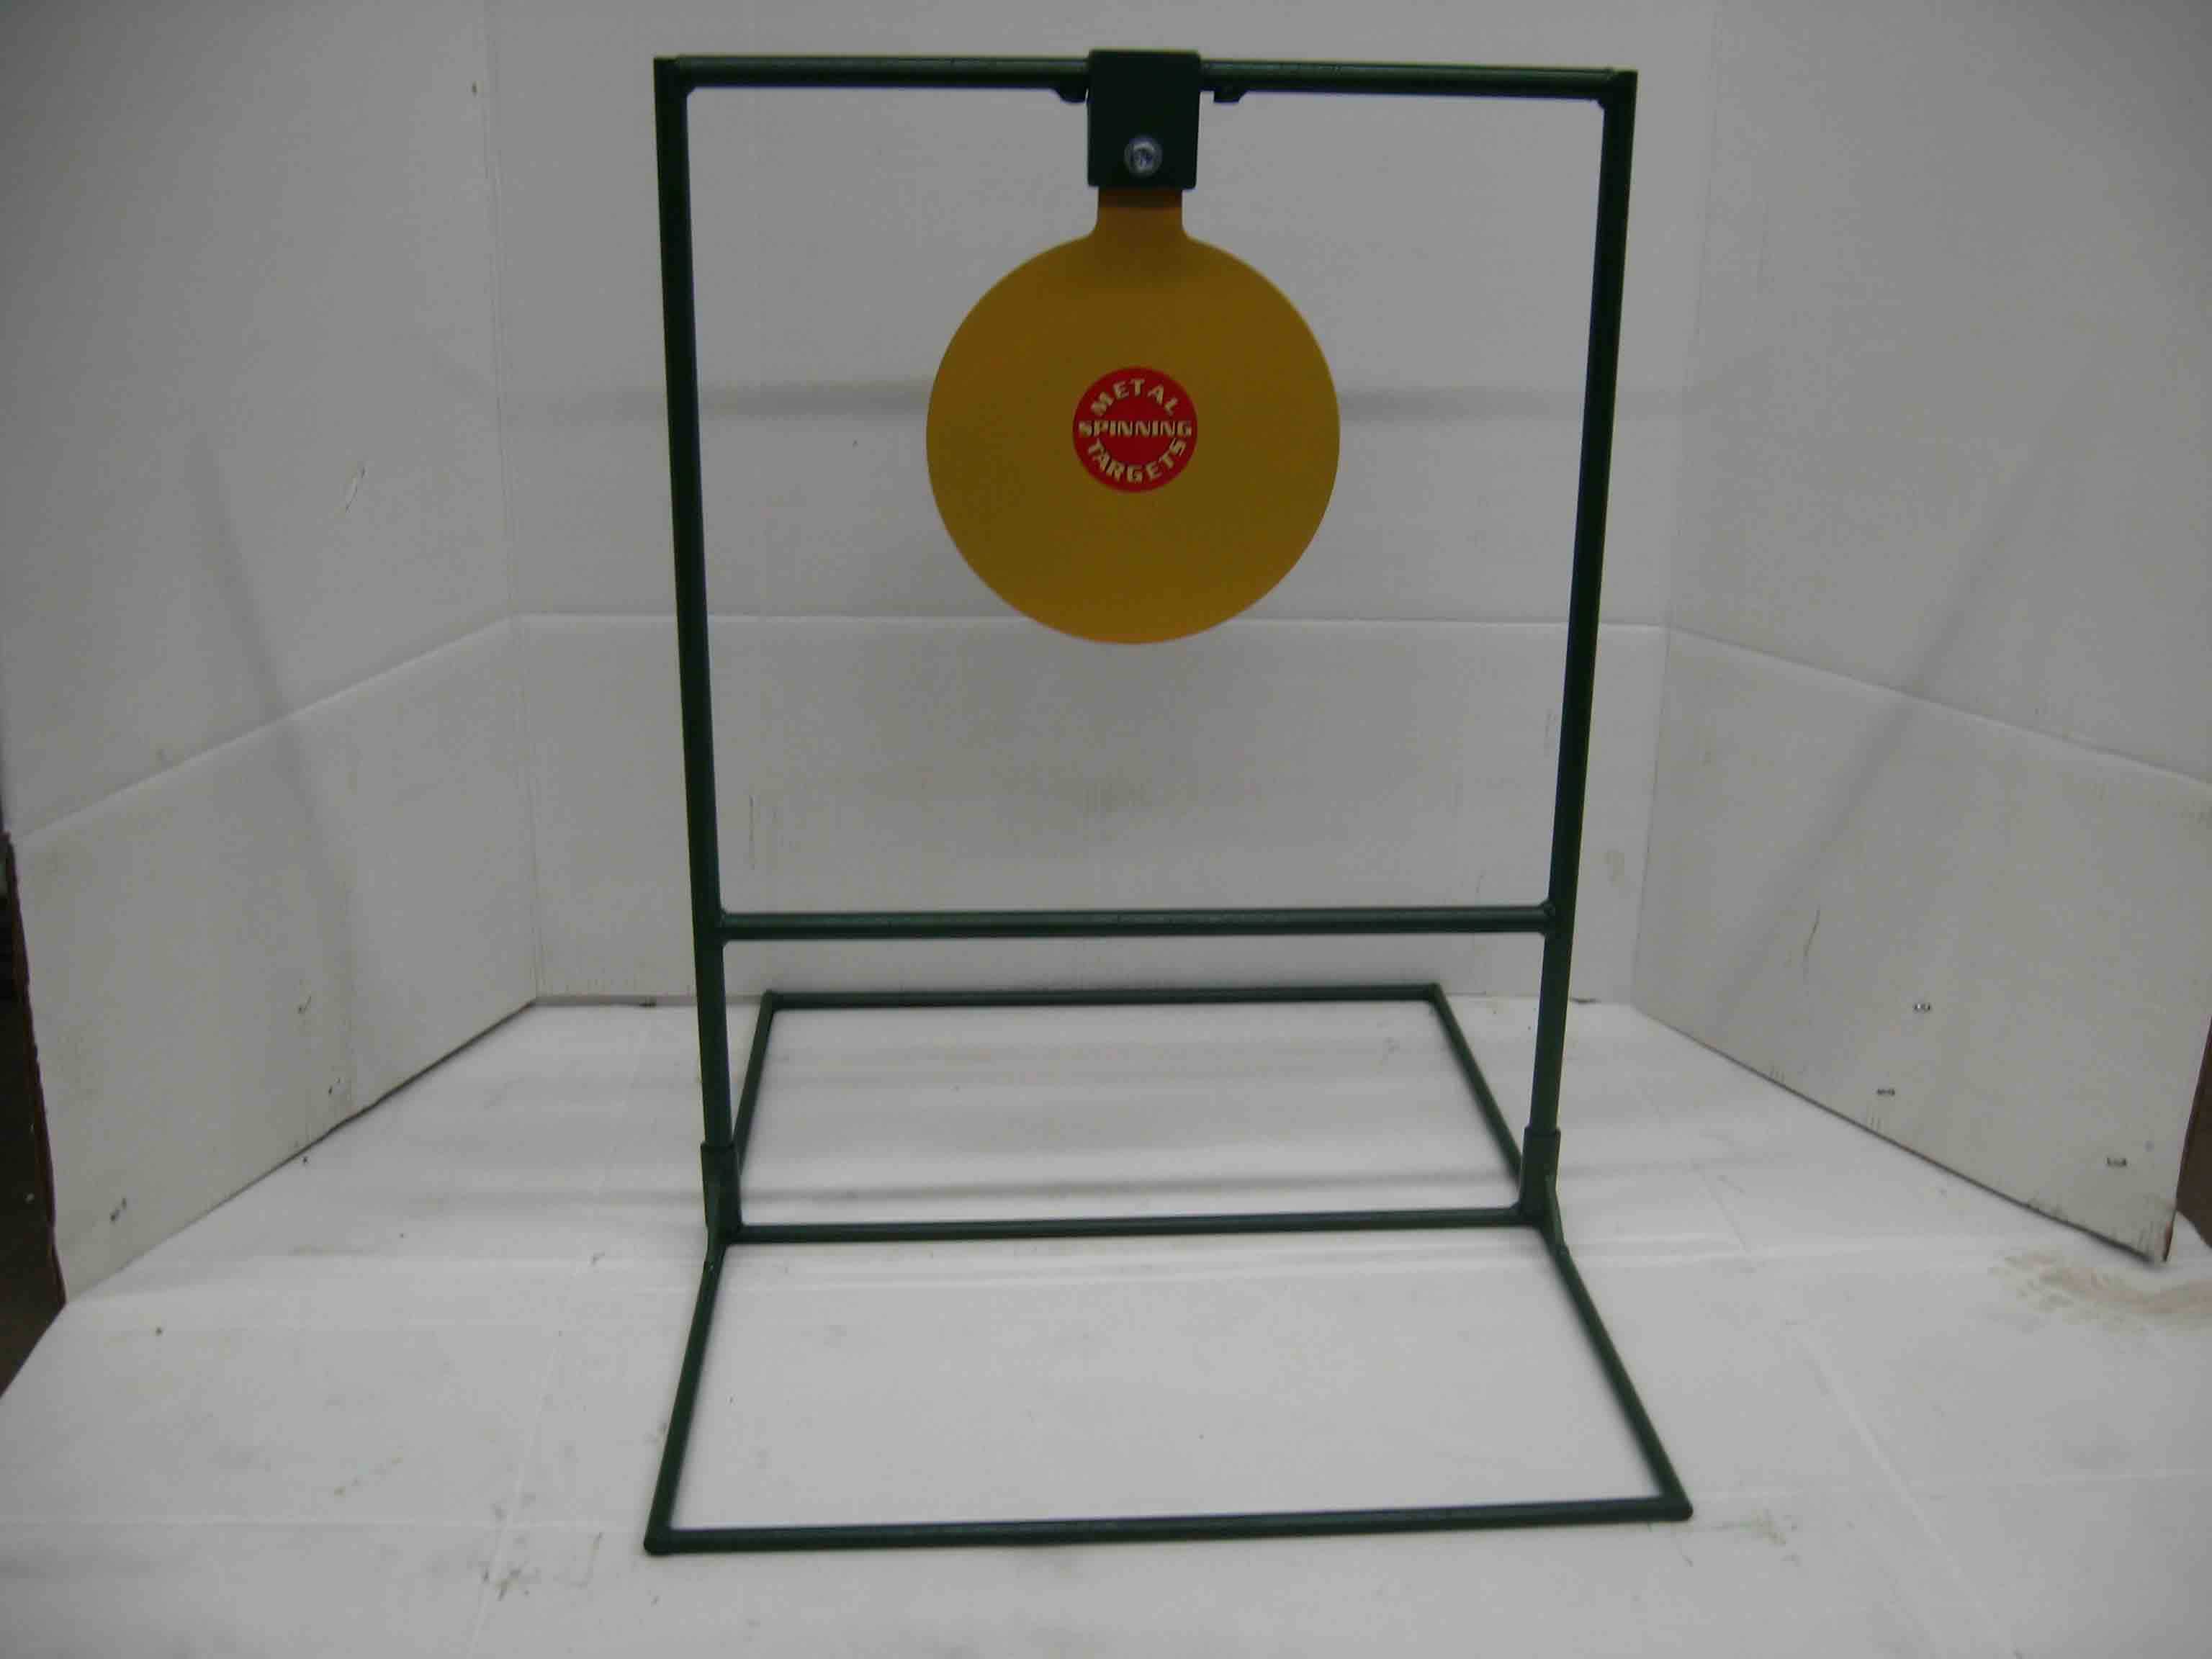 10" Circle Gong Standard Target-Rifle*